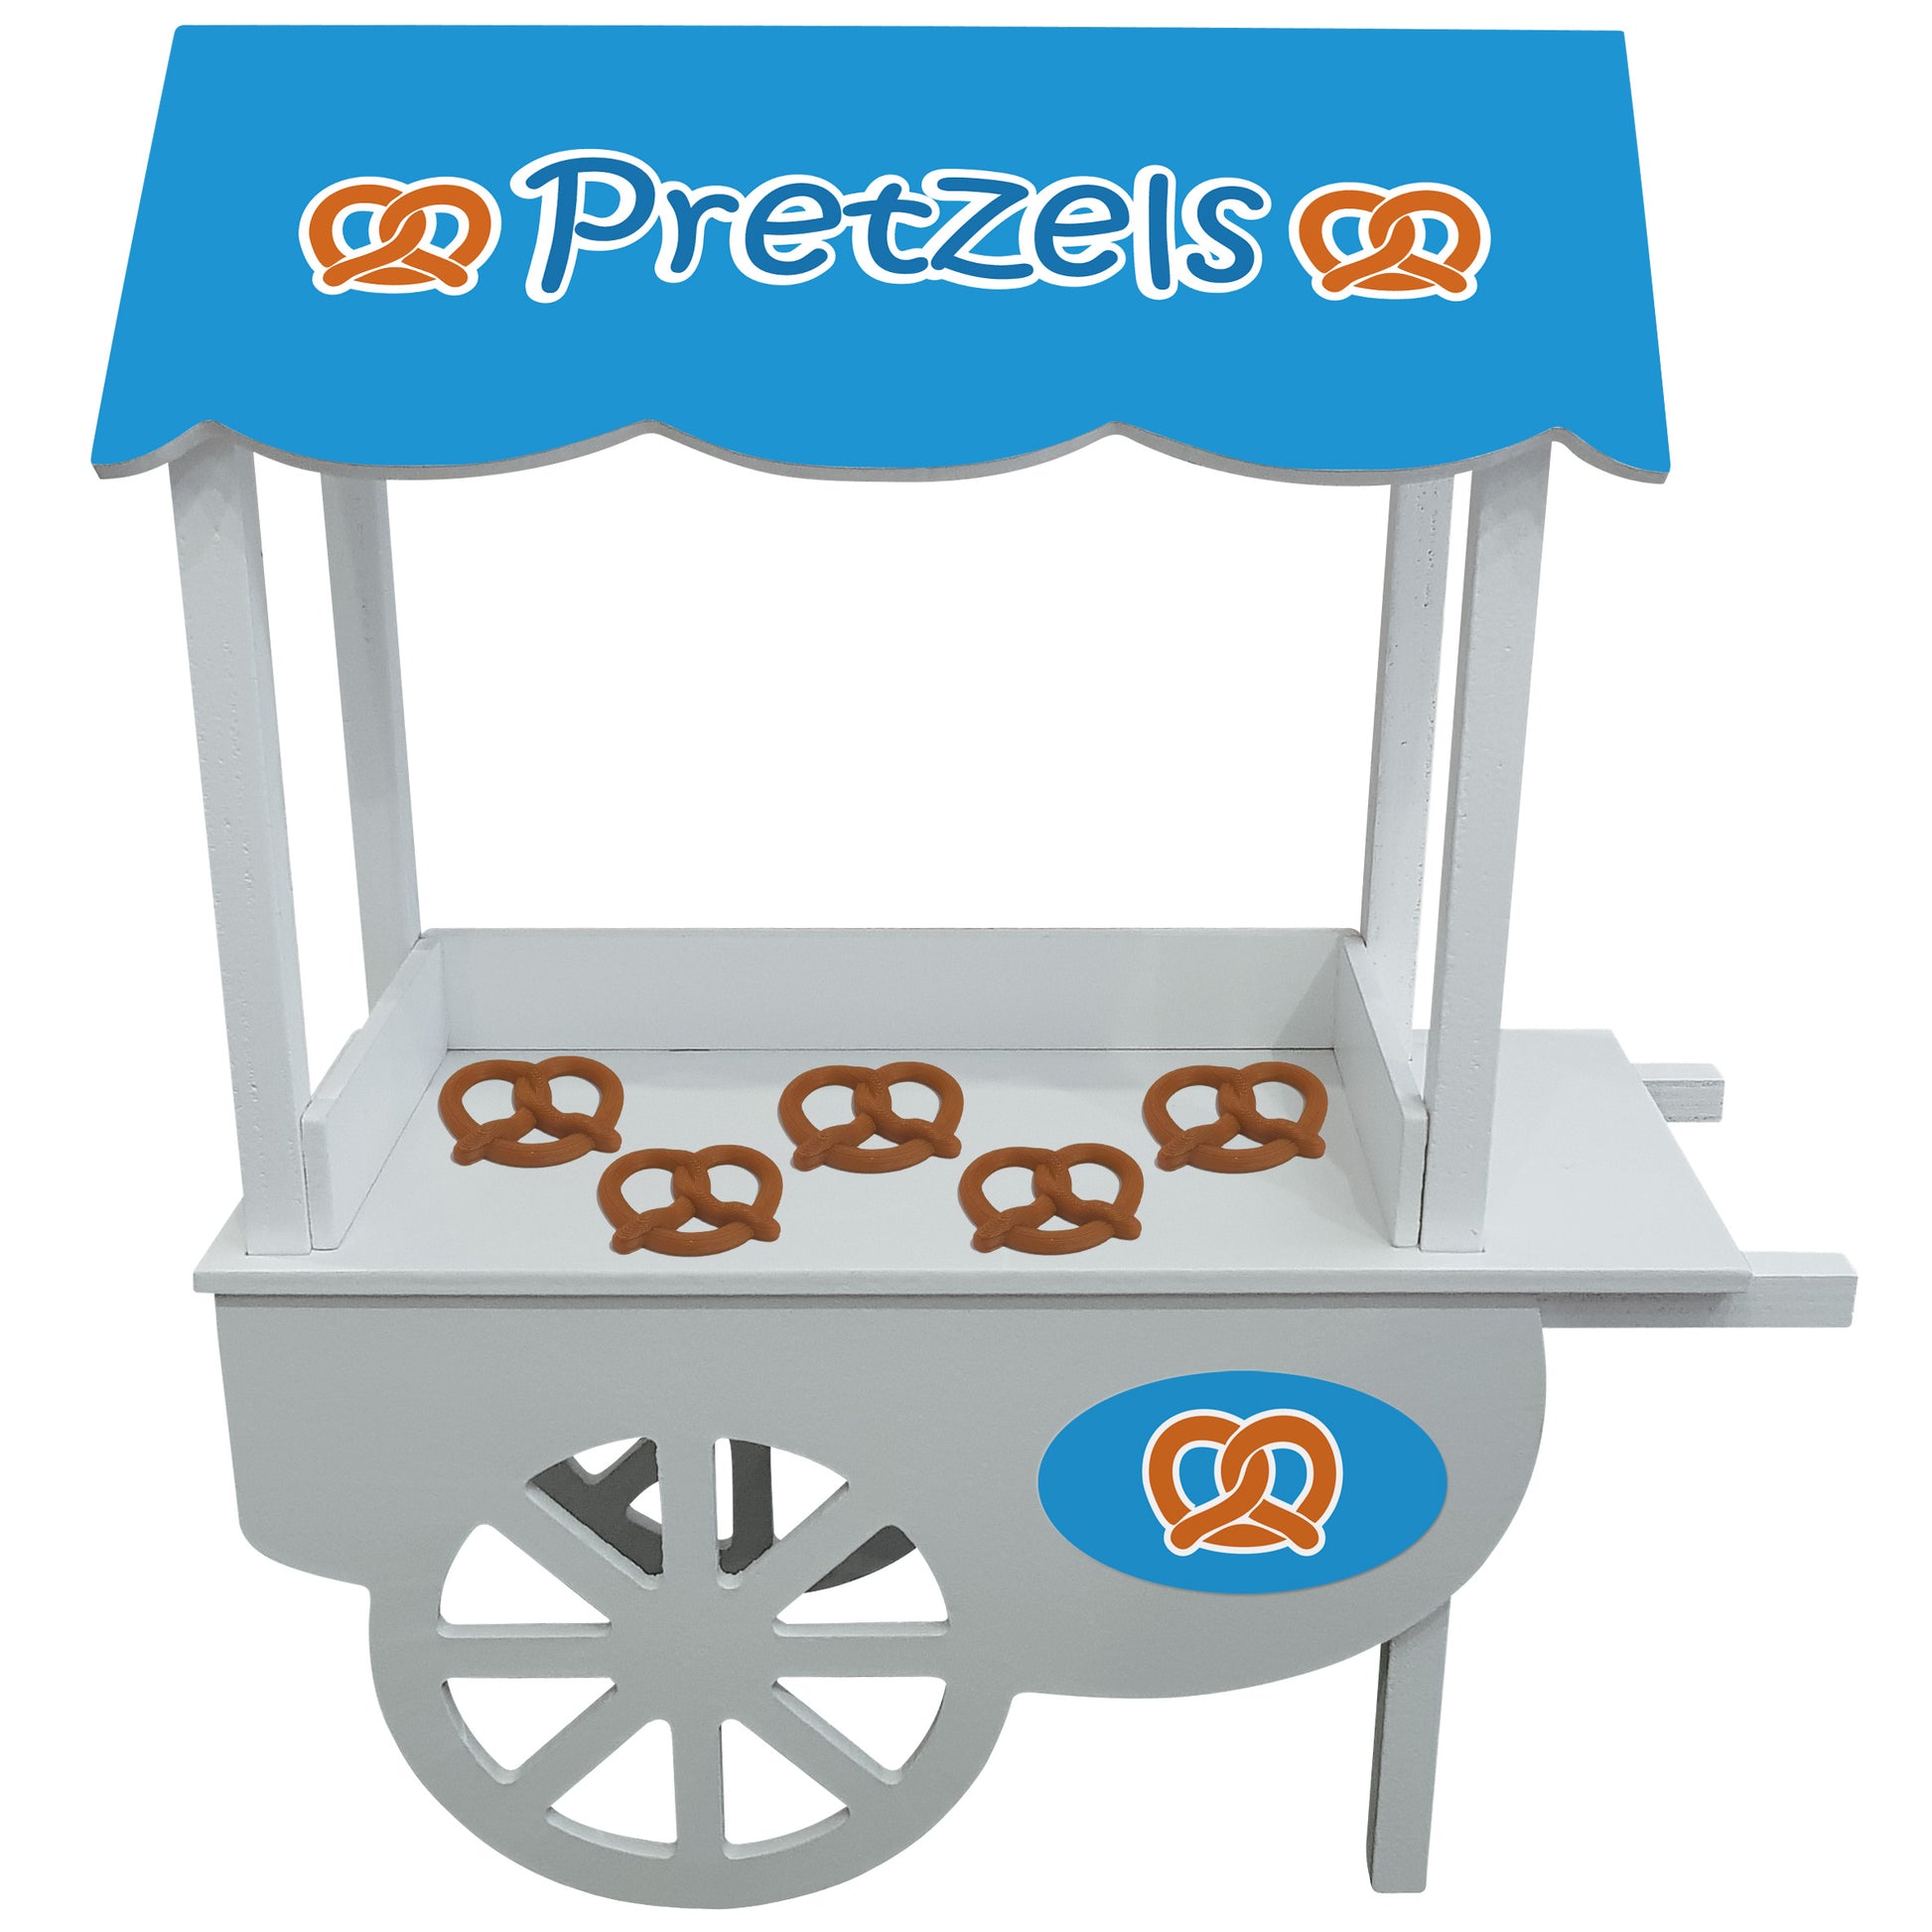 Elf pretzel stand with miniature elf food pretzels